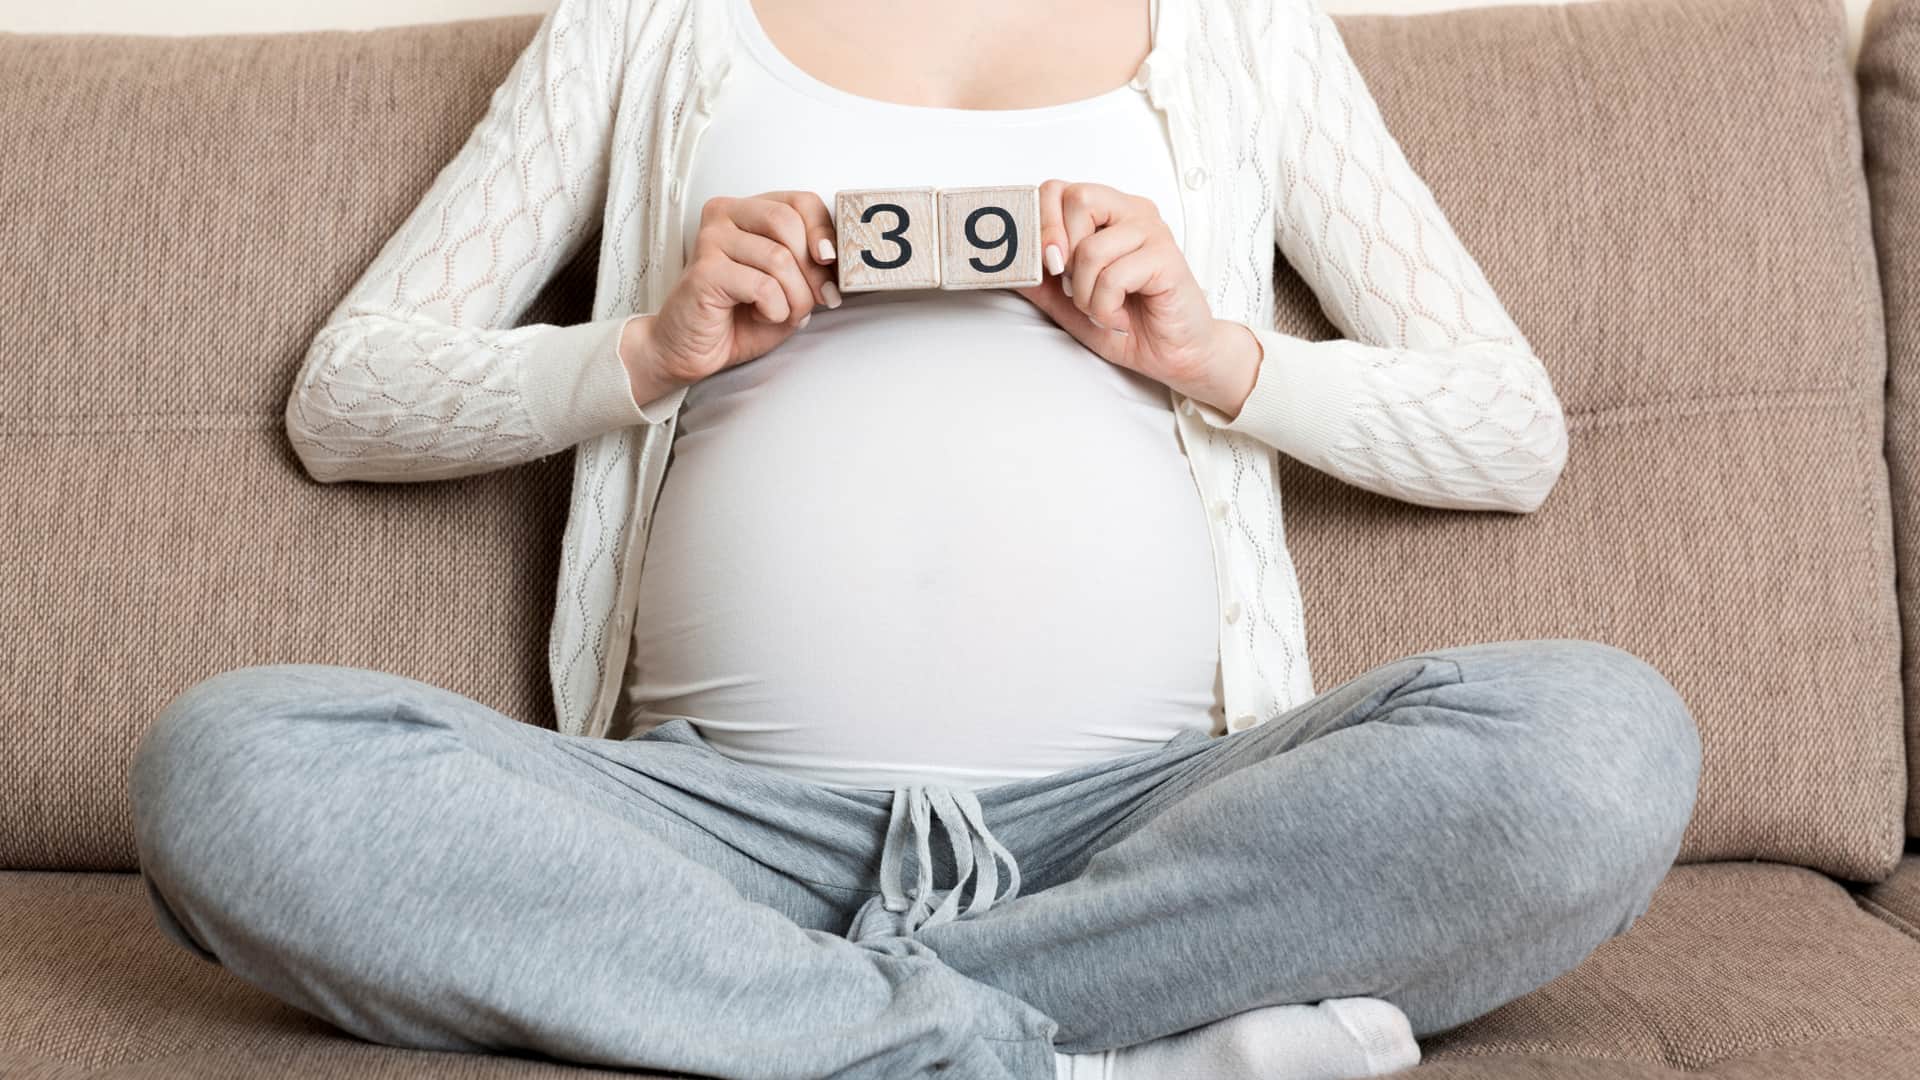 39 semanas de embarazo: ¿cuándo ir al hospital?